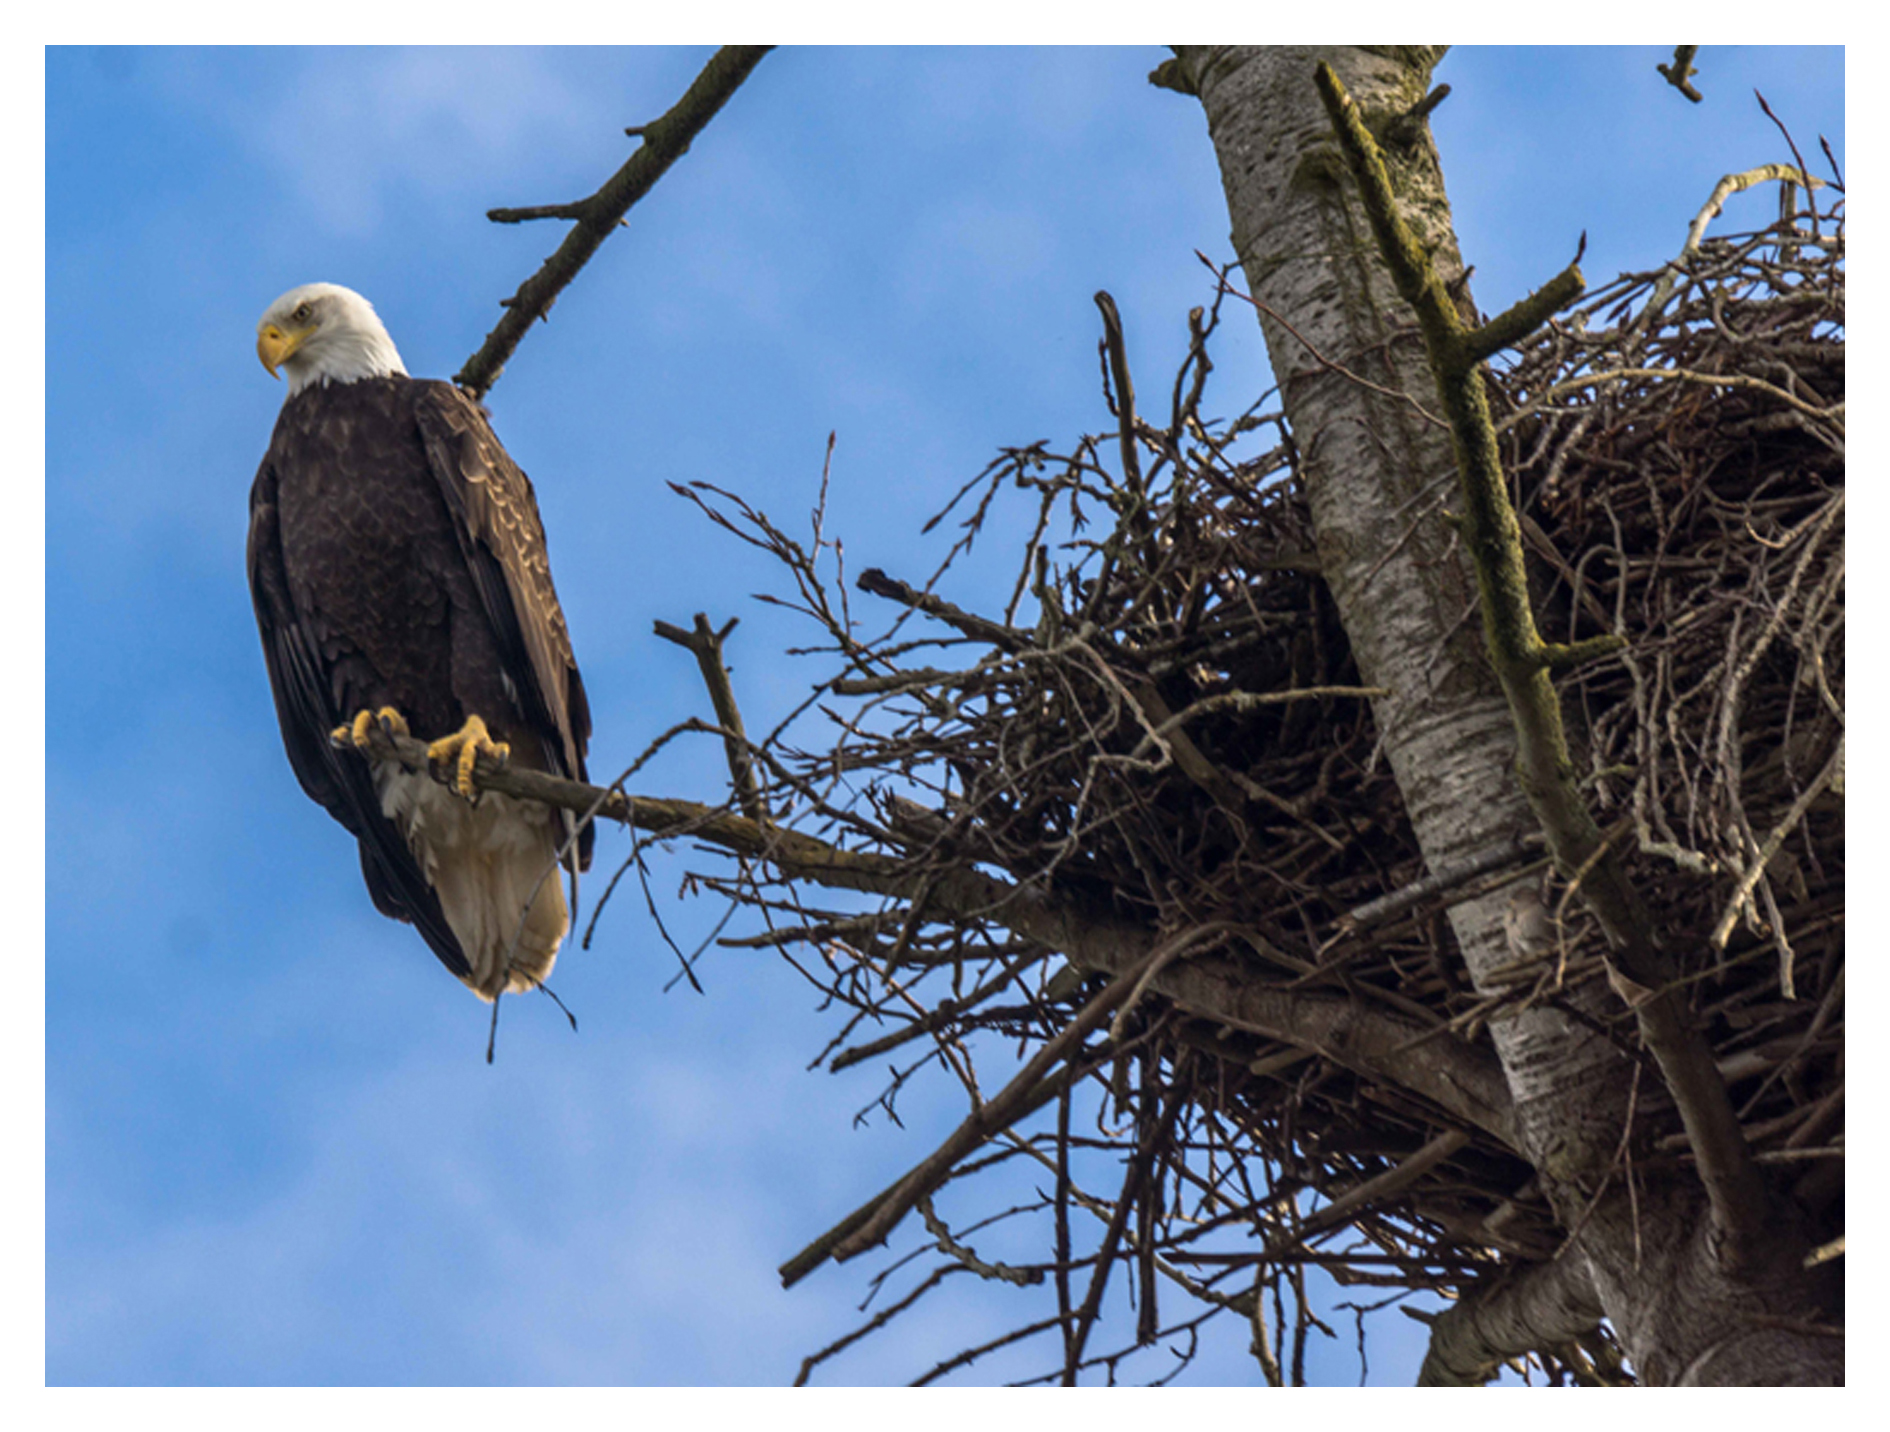 2015-02-22 Ladner Bald Eagles and Nest-12